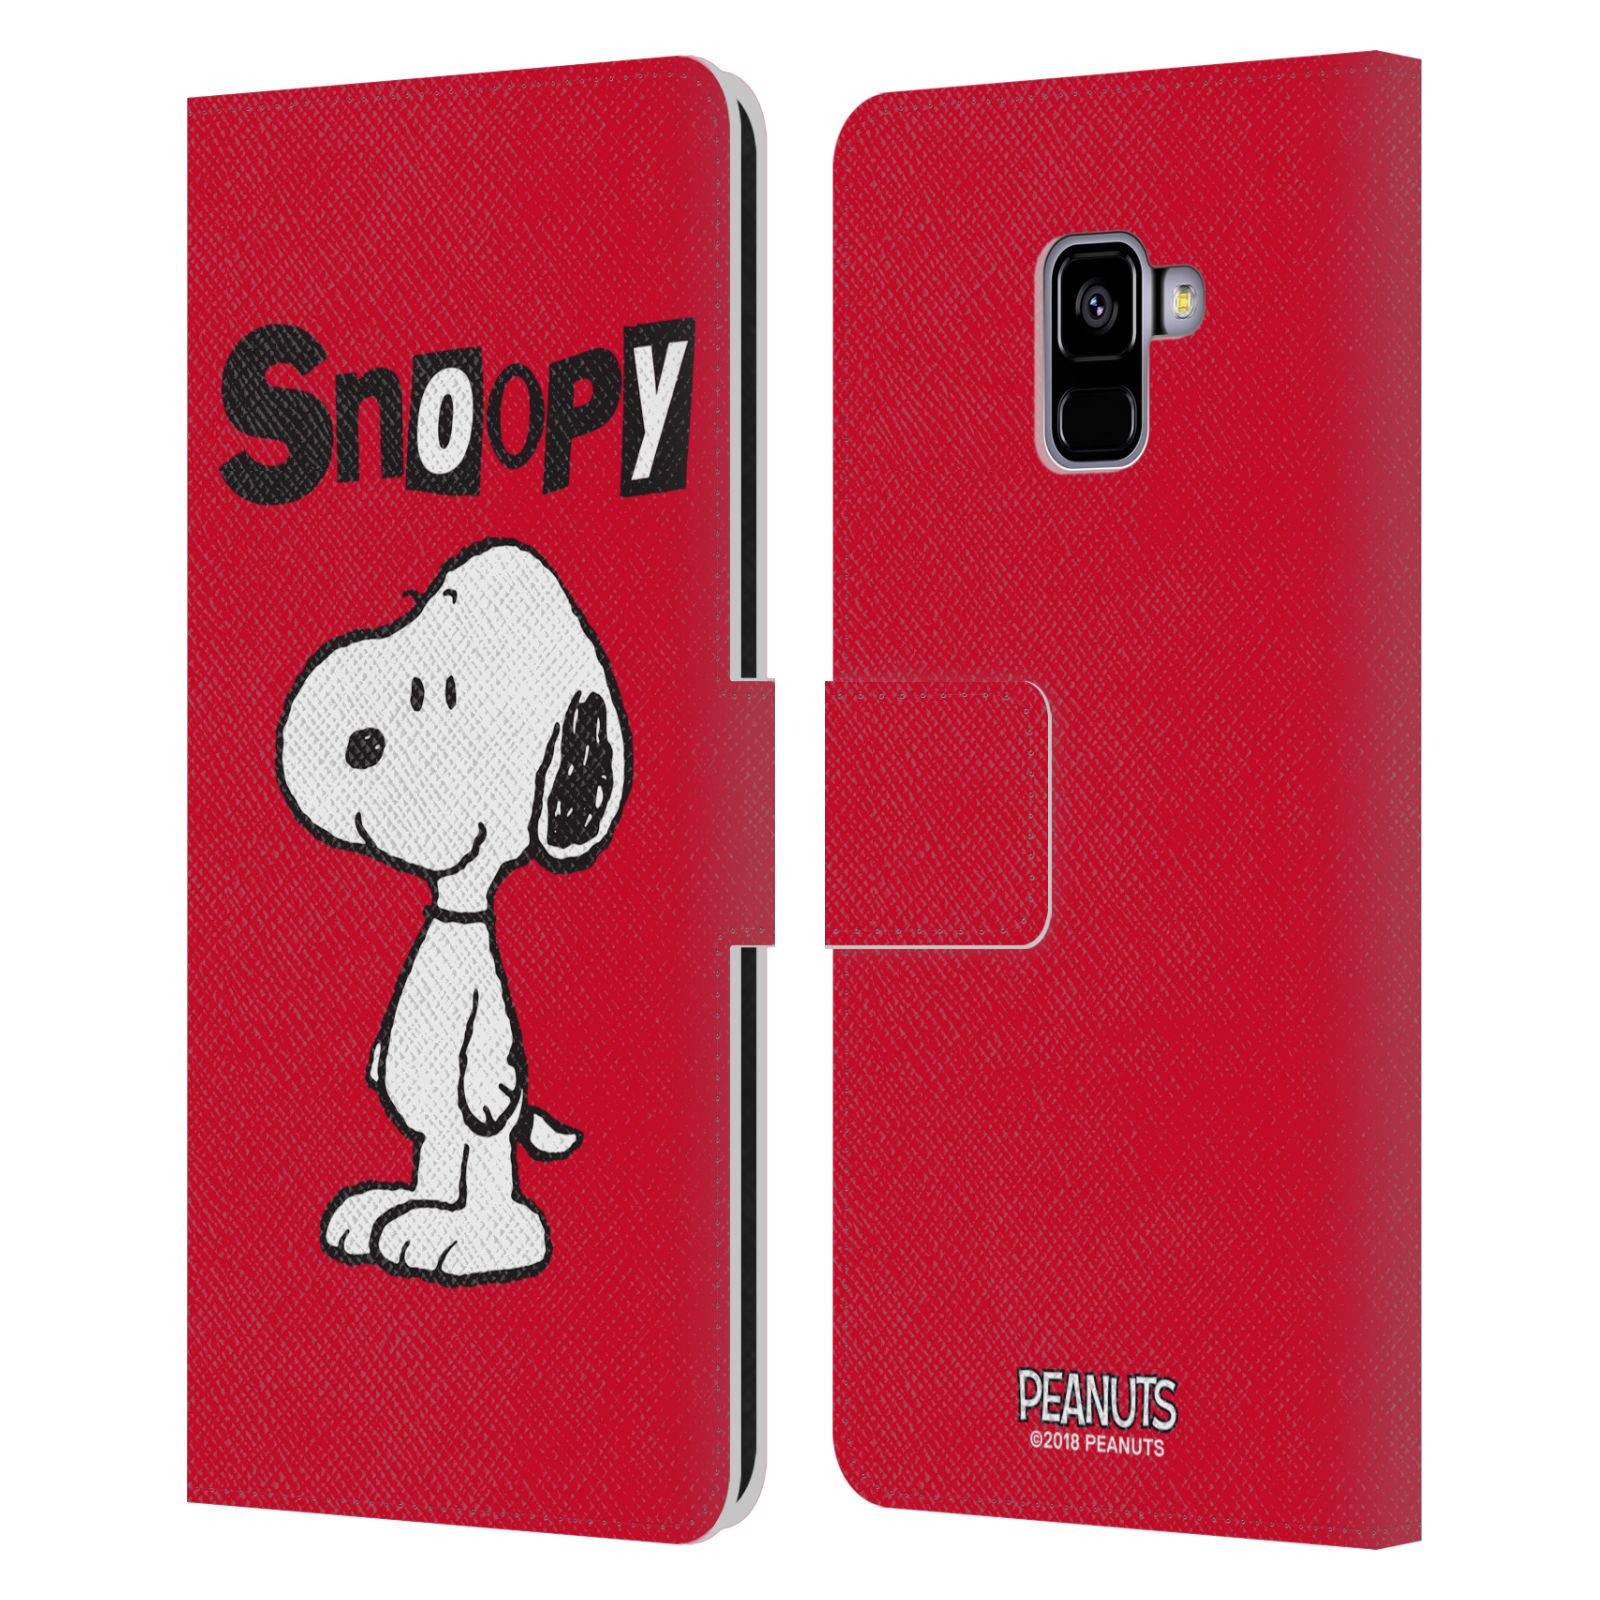 Pouzdro na mobil Samsung Galaxy A8+ 2018 - HEAD CASE - Peanuts - Snoopy červená